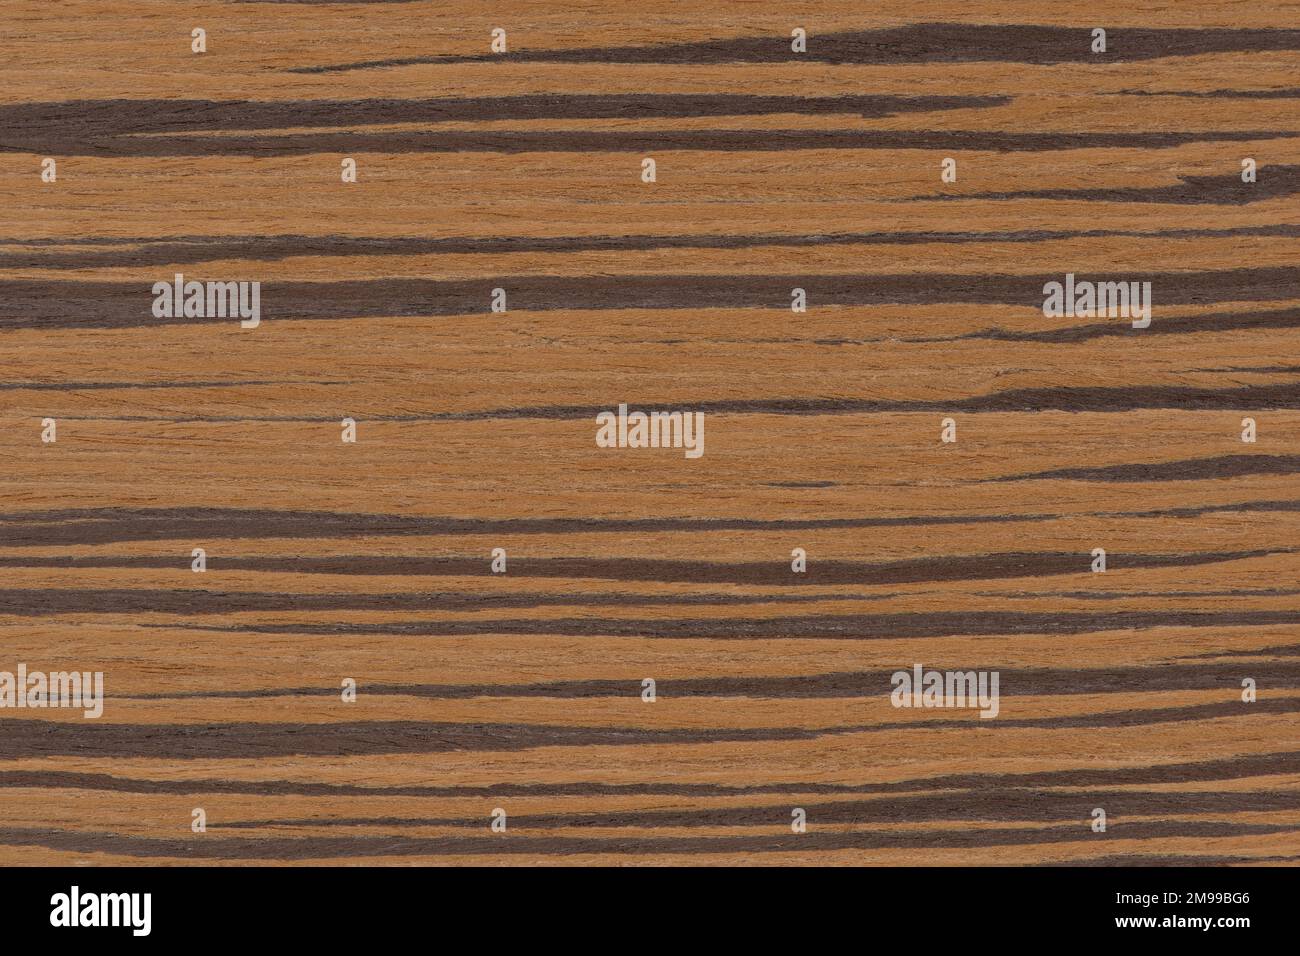 Zebrabaum. Konsistenz von braunem Holz mit horizontalen schwarzen Streifen. Afrikanische Zebrano-Holztextur auf Makro. Foto in sehr hoher Auflösung. Stockfoto